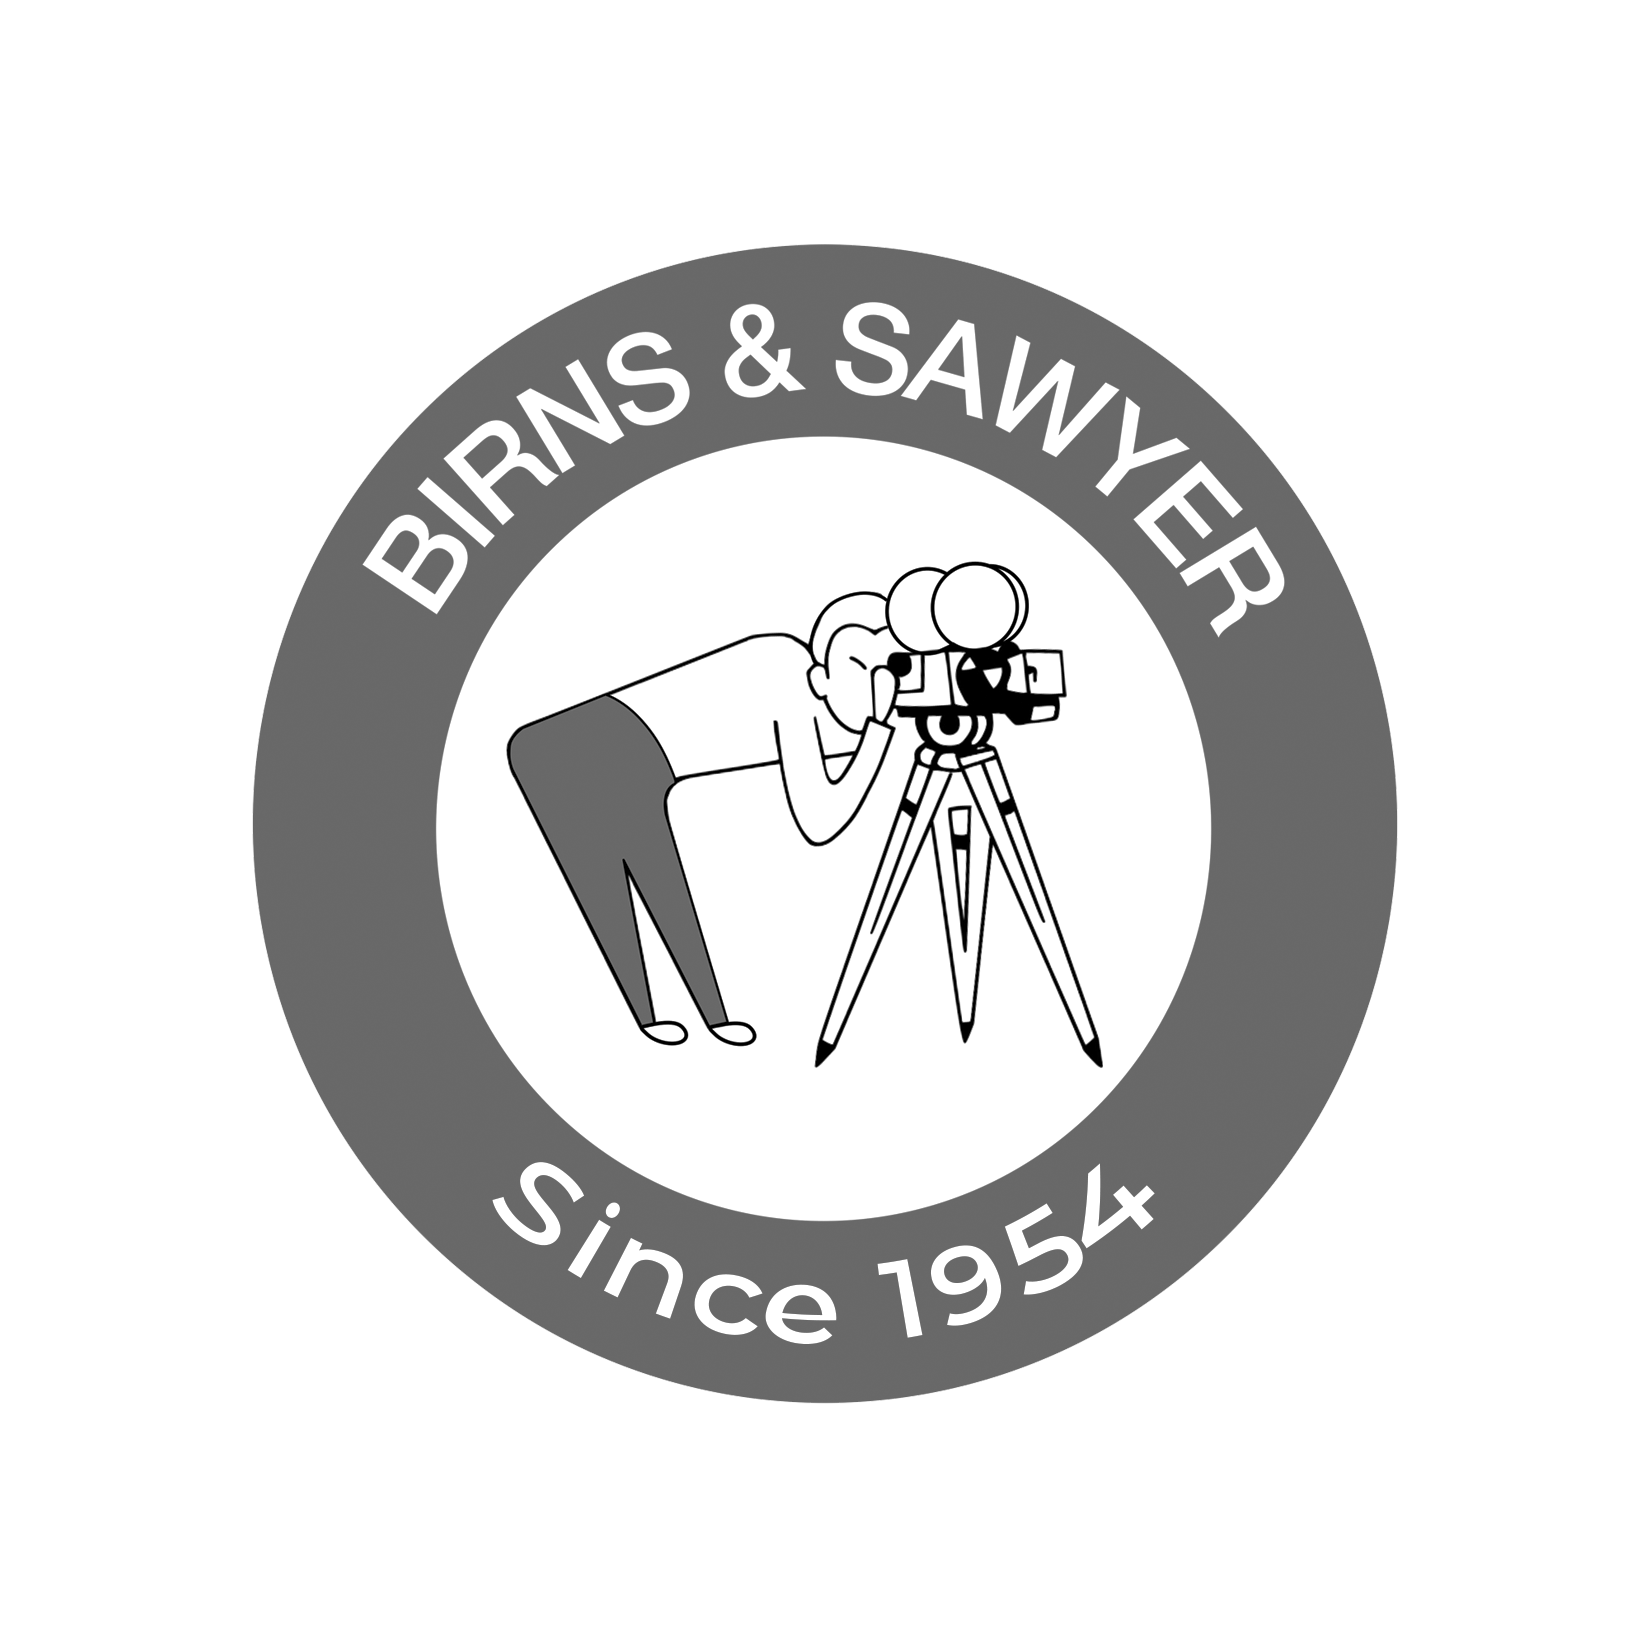 Birns & Sawyer